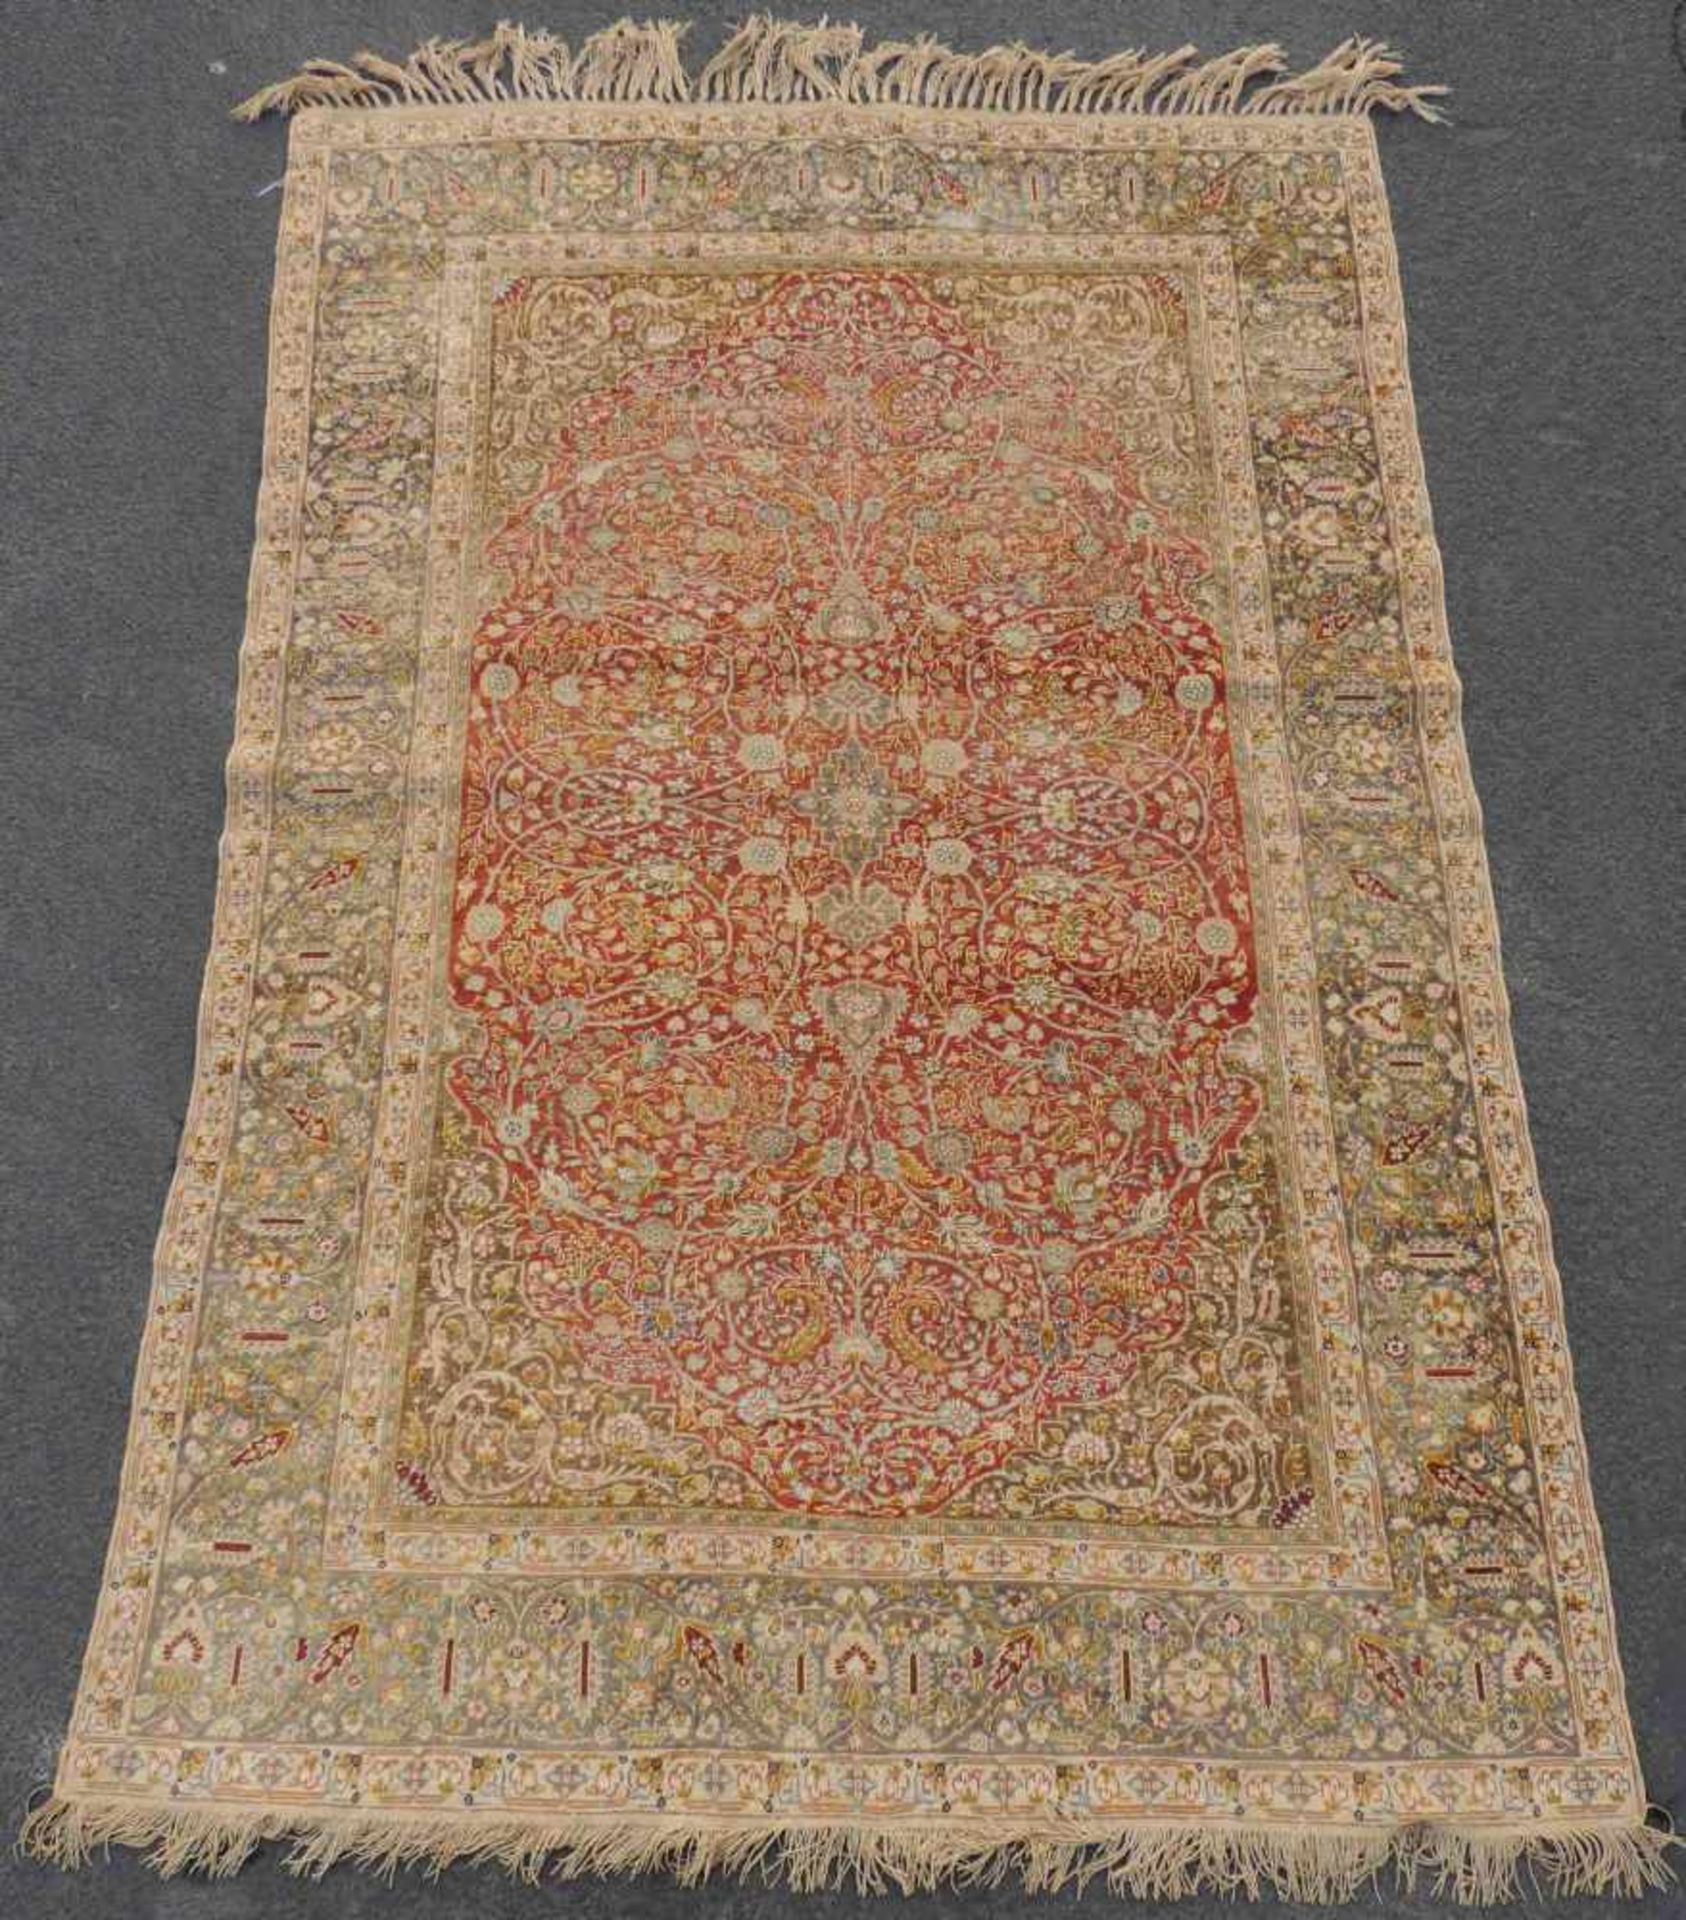 Kayserie Seidenteppich. Türkei. Antik, um 1900. 208 cm x 149 cm. Orientteppich, handgeknüpft.